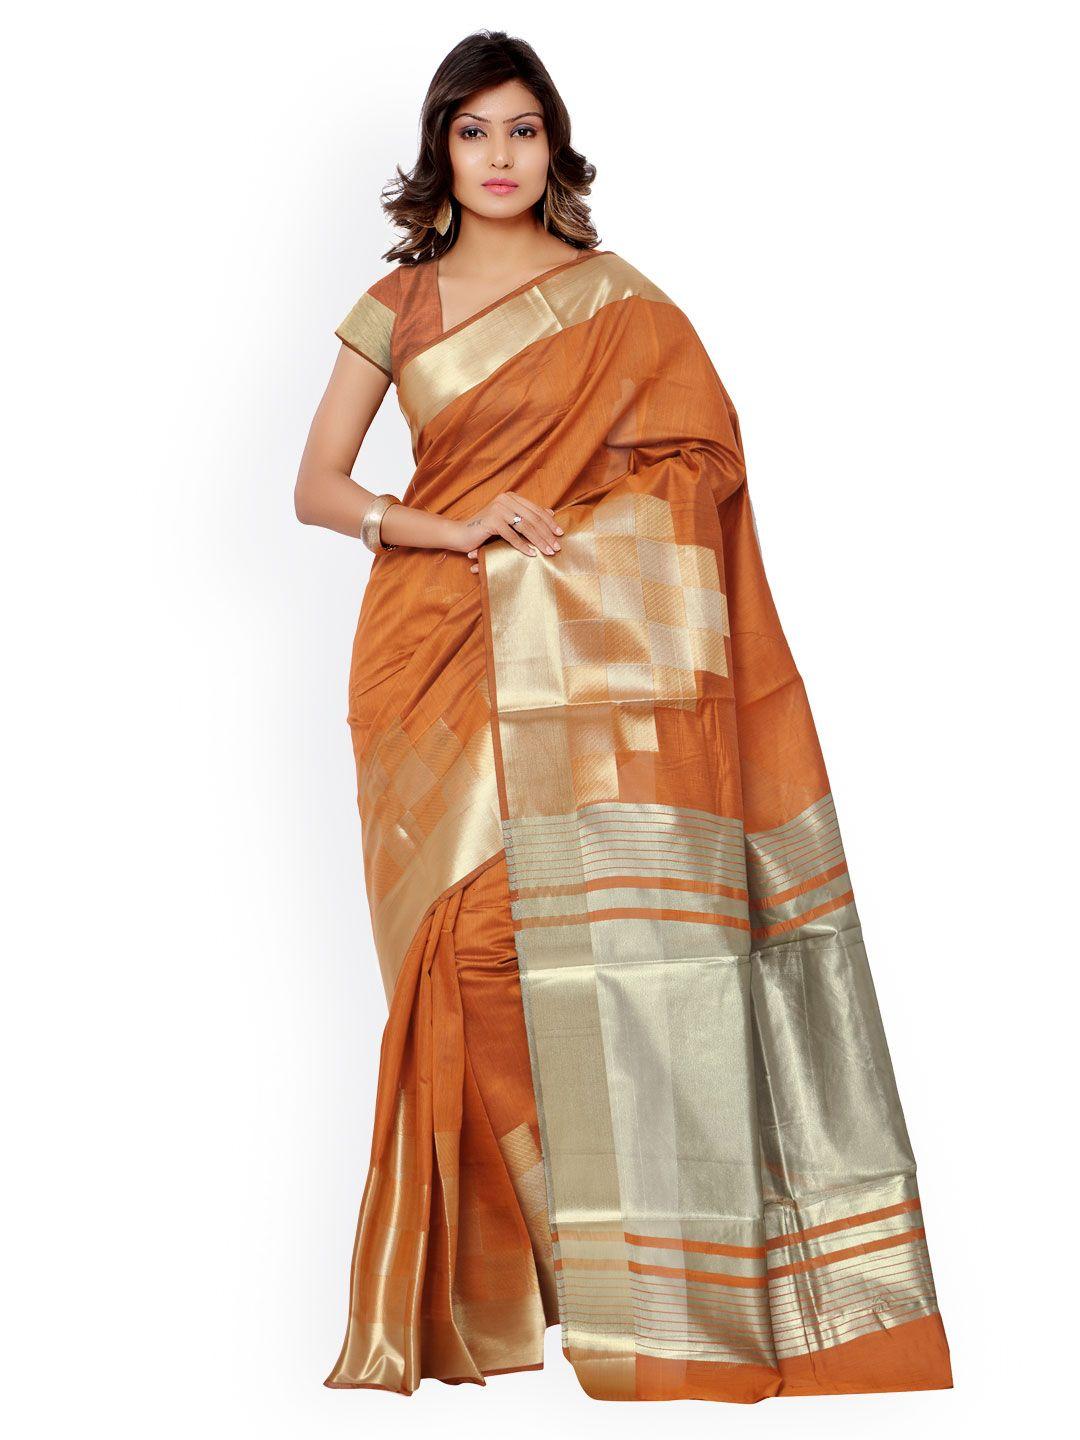 varkala silk sarees rust orange banarasi cotton silk & jacquard traditional saree